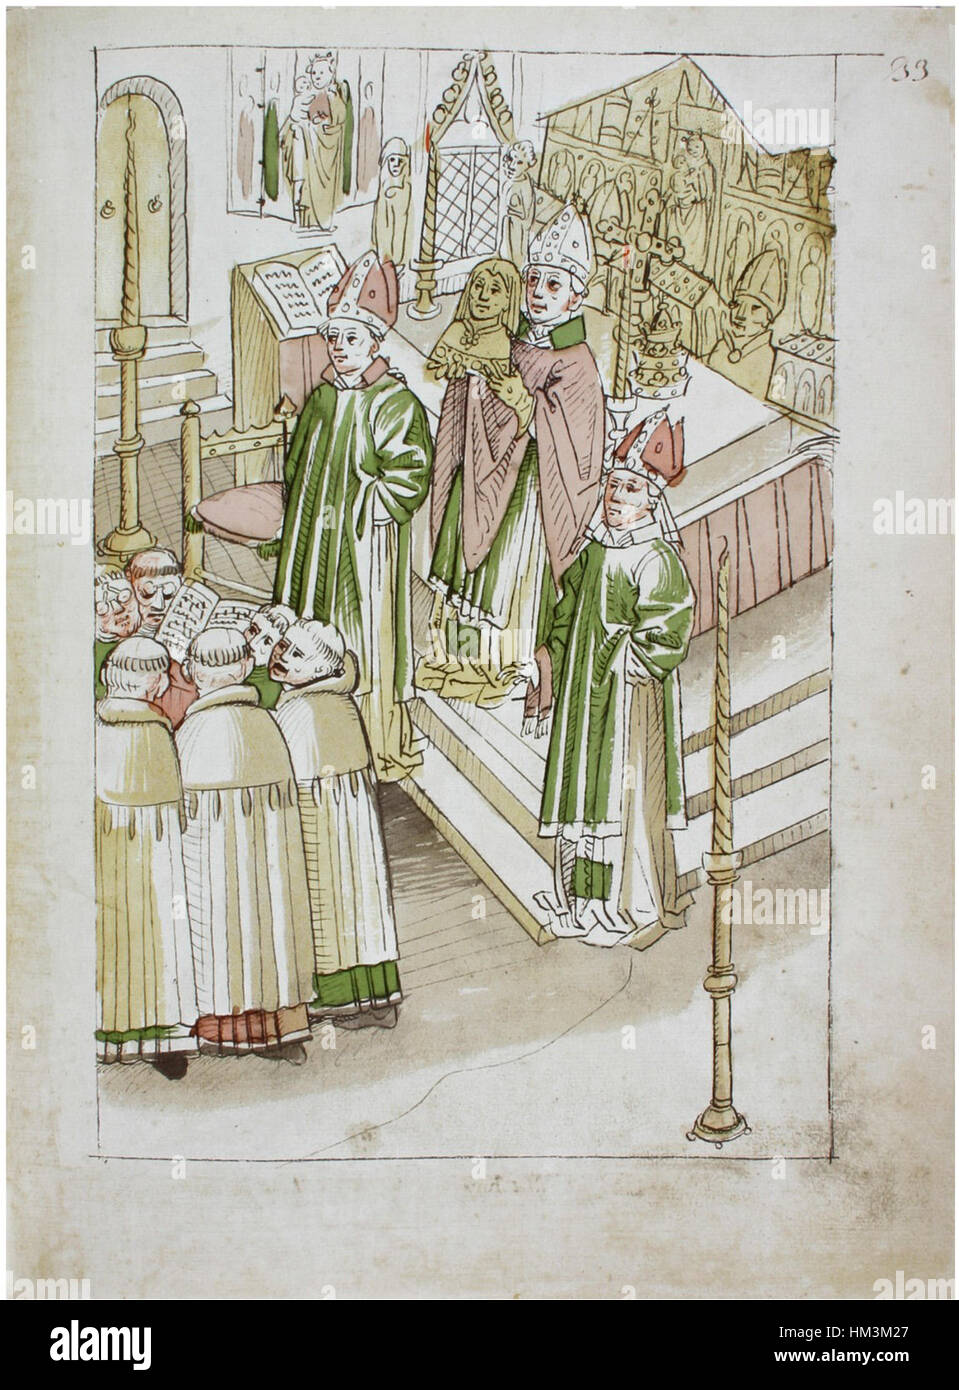 Heiligsprechung Konstanzer Richental Chronik der Heiligen Brigitta von Schweden 33r Banque D'Images